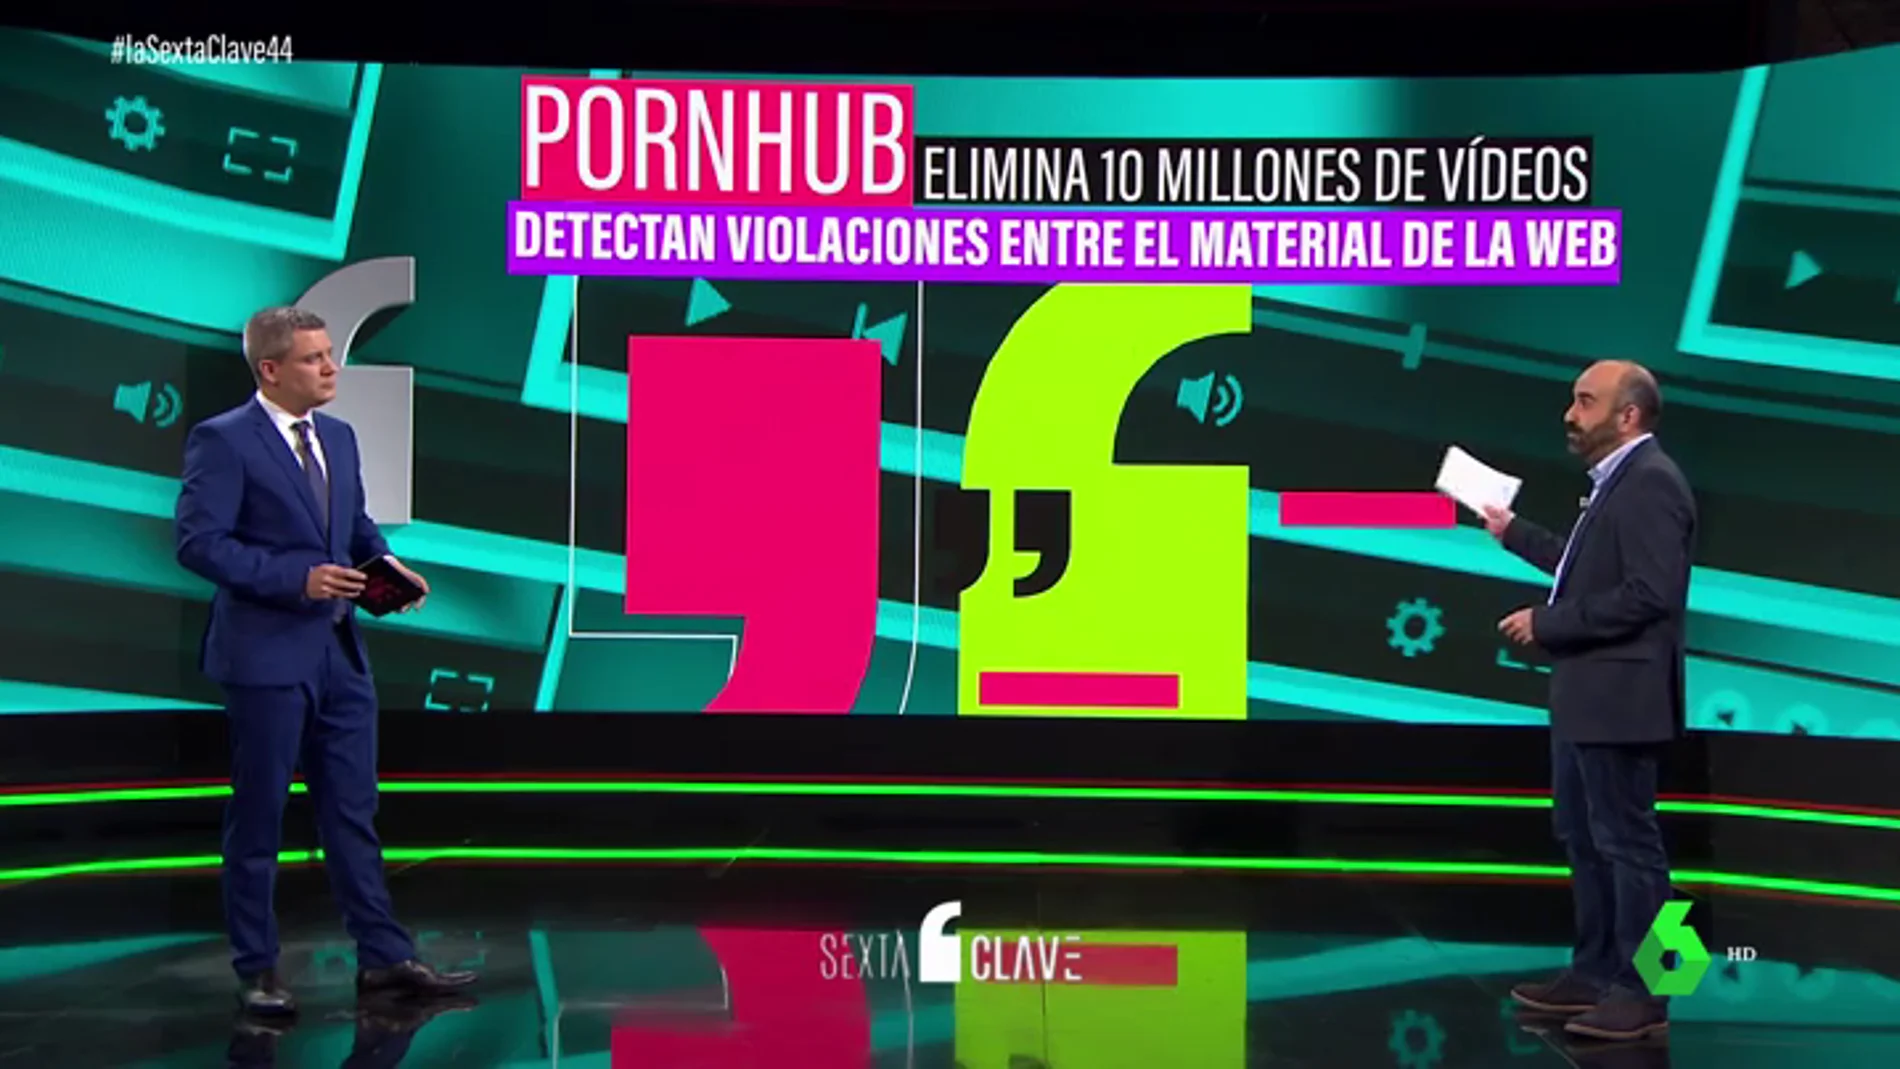 ¿Por qué ha eliminado Pornhub más de 10 millones de vídeos? No podía asegurar que en ellos no hubiera violaciones